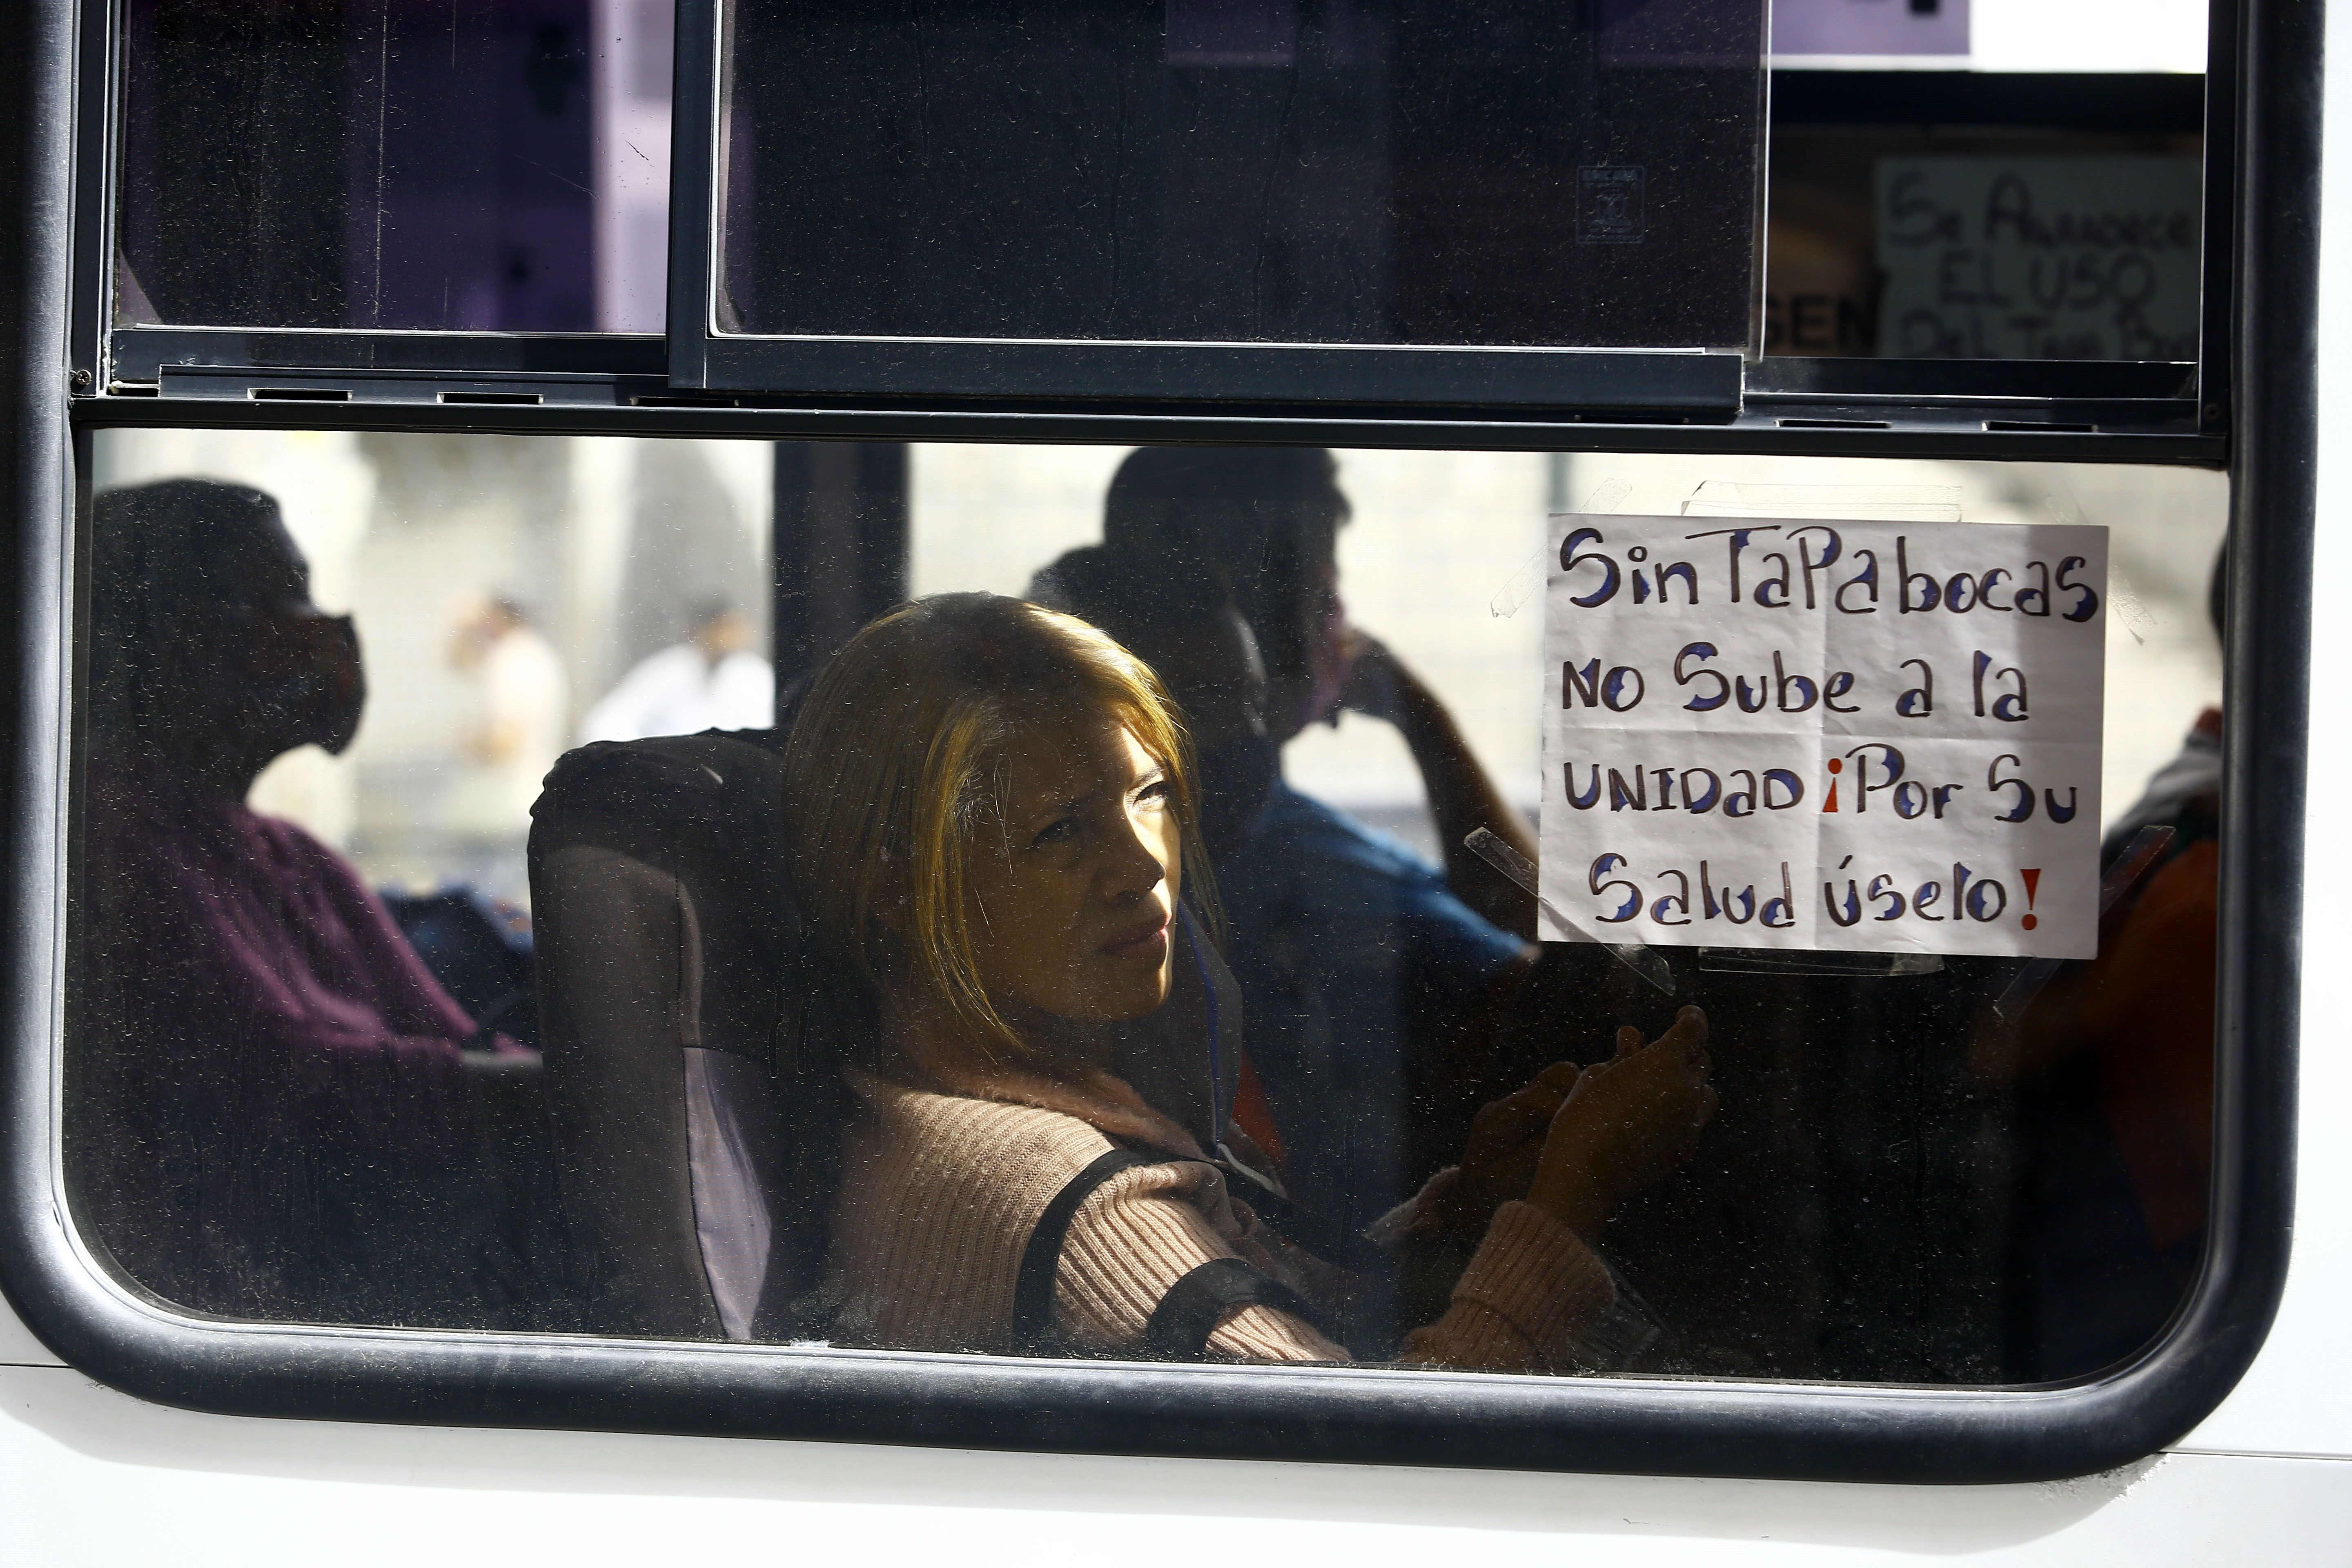 04/09/2020 Mensaje por el uso de mascarillas en un autobús en Carabobo (Venezuela) POLITICA SUDAMÉRICA INTERNACIONAL VENEZUELA JUAN CARLOS HERNANDEZ / ZUMA PRESS / CONTACTOPHOTO 